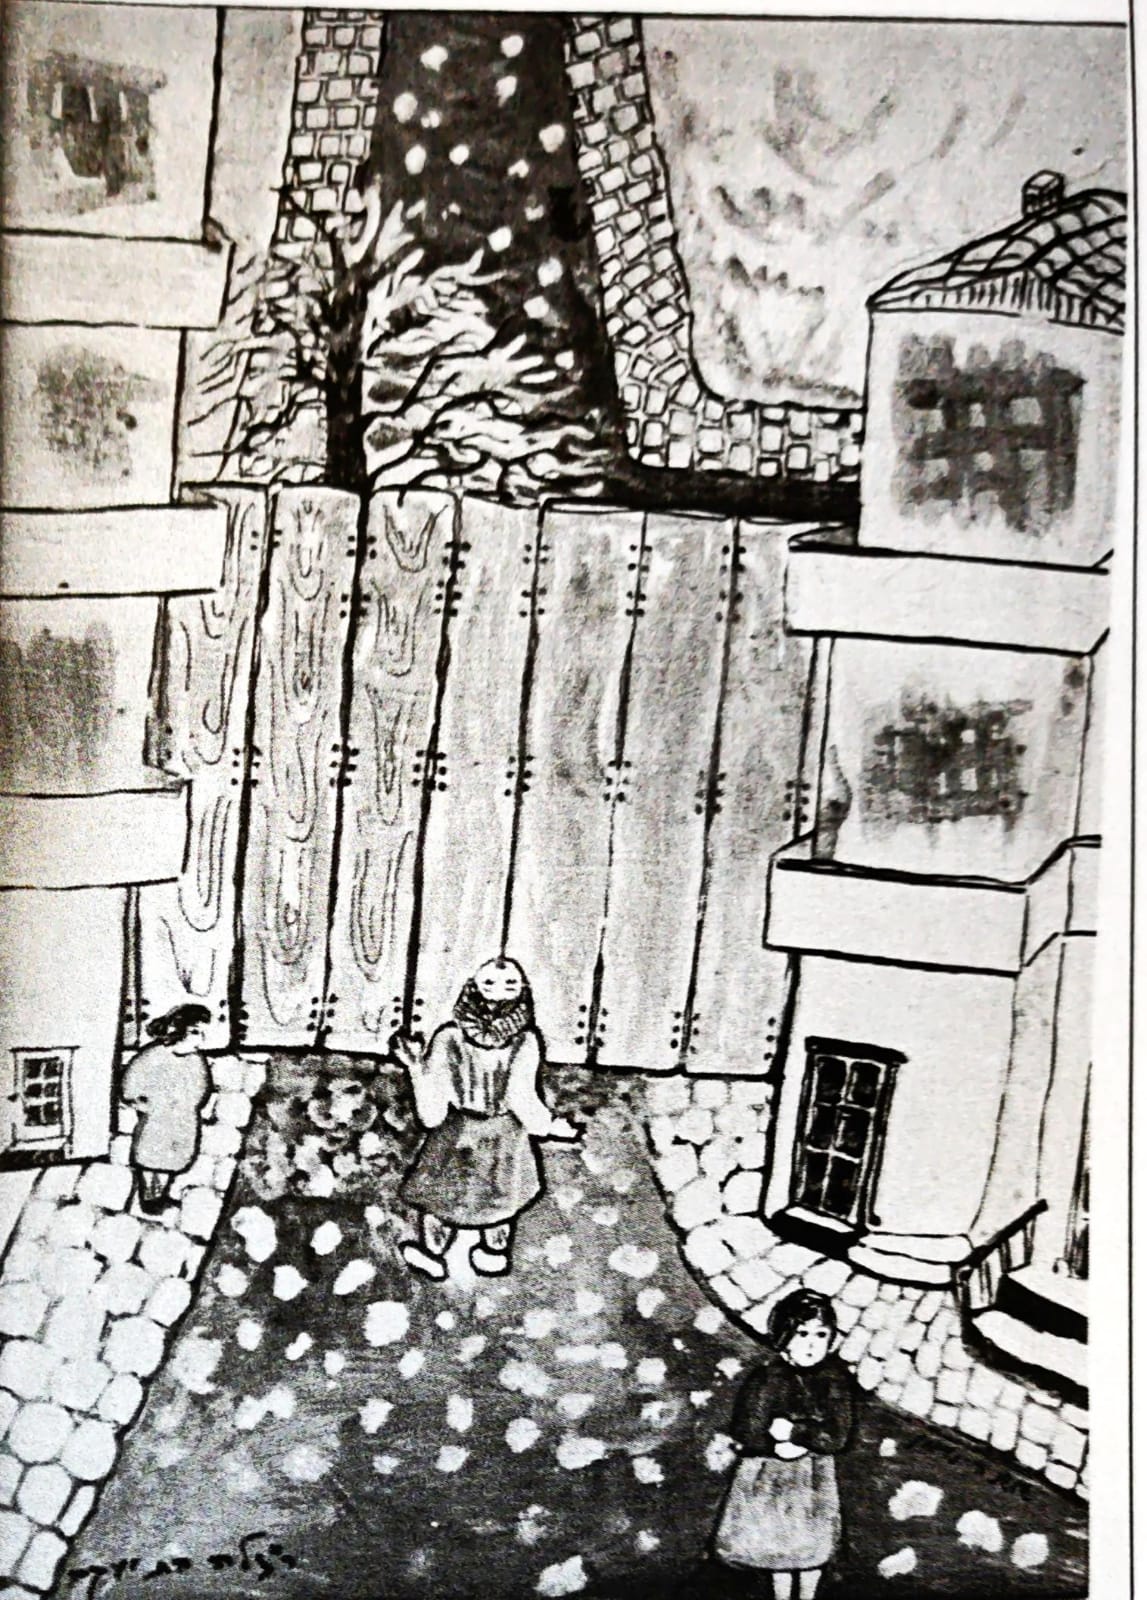 Ein Gemälde von Shoshana Neumann, das die Situation im Ghetto darstellt: „Die Grenze des Ghettos verschloss das Ende unserer Straße. Hohe Bretter versperrten den Durchgang und markierten den engen Bereich des Ghettos, in dem etwa 50.000 Juden zusammengepfercht waren.